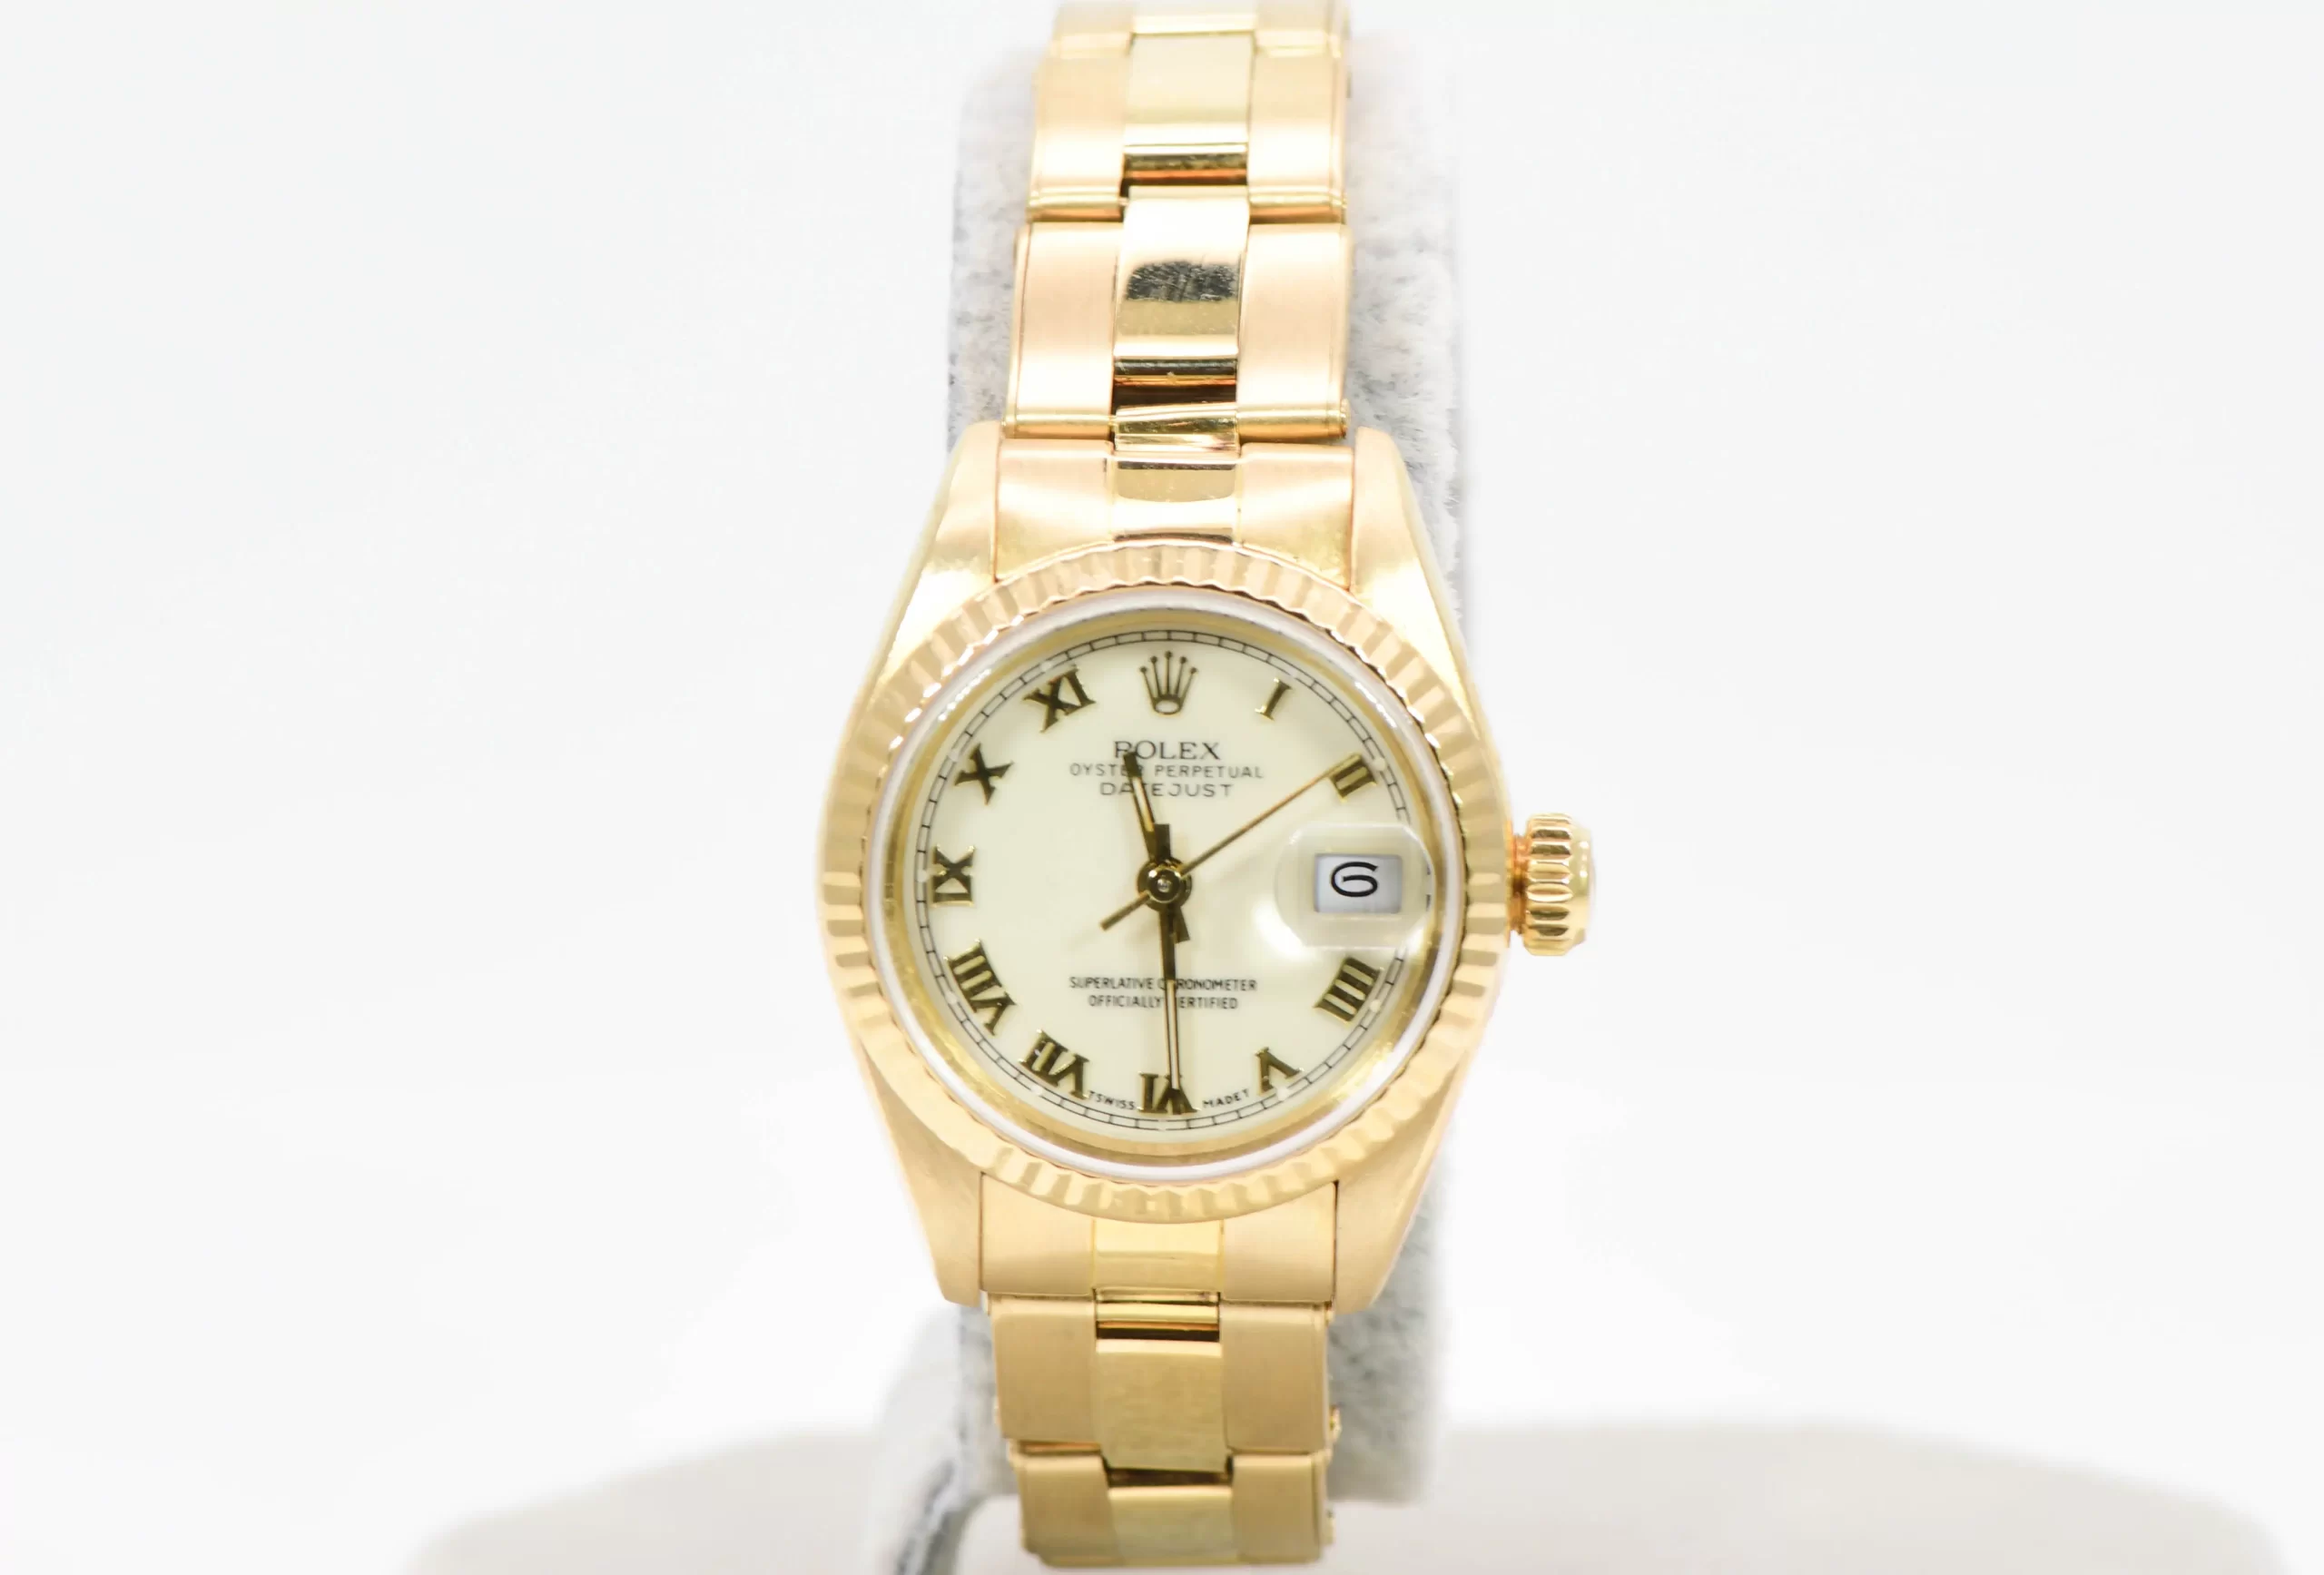 Rolex Datejust Ladies 26mm Yellow Gold Wristwatch